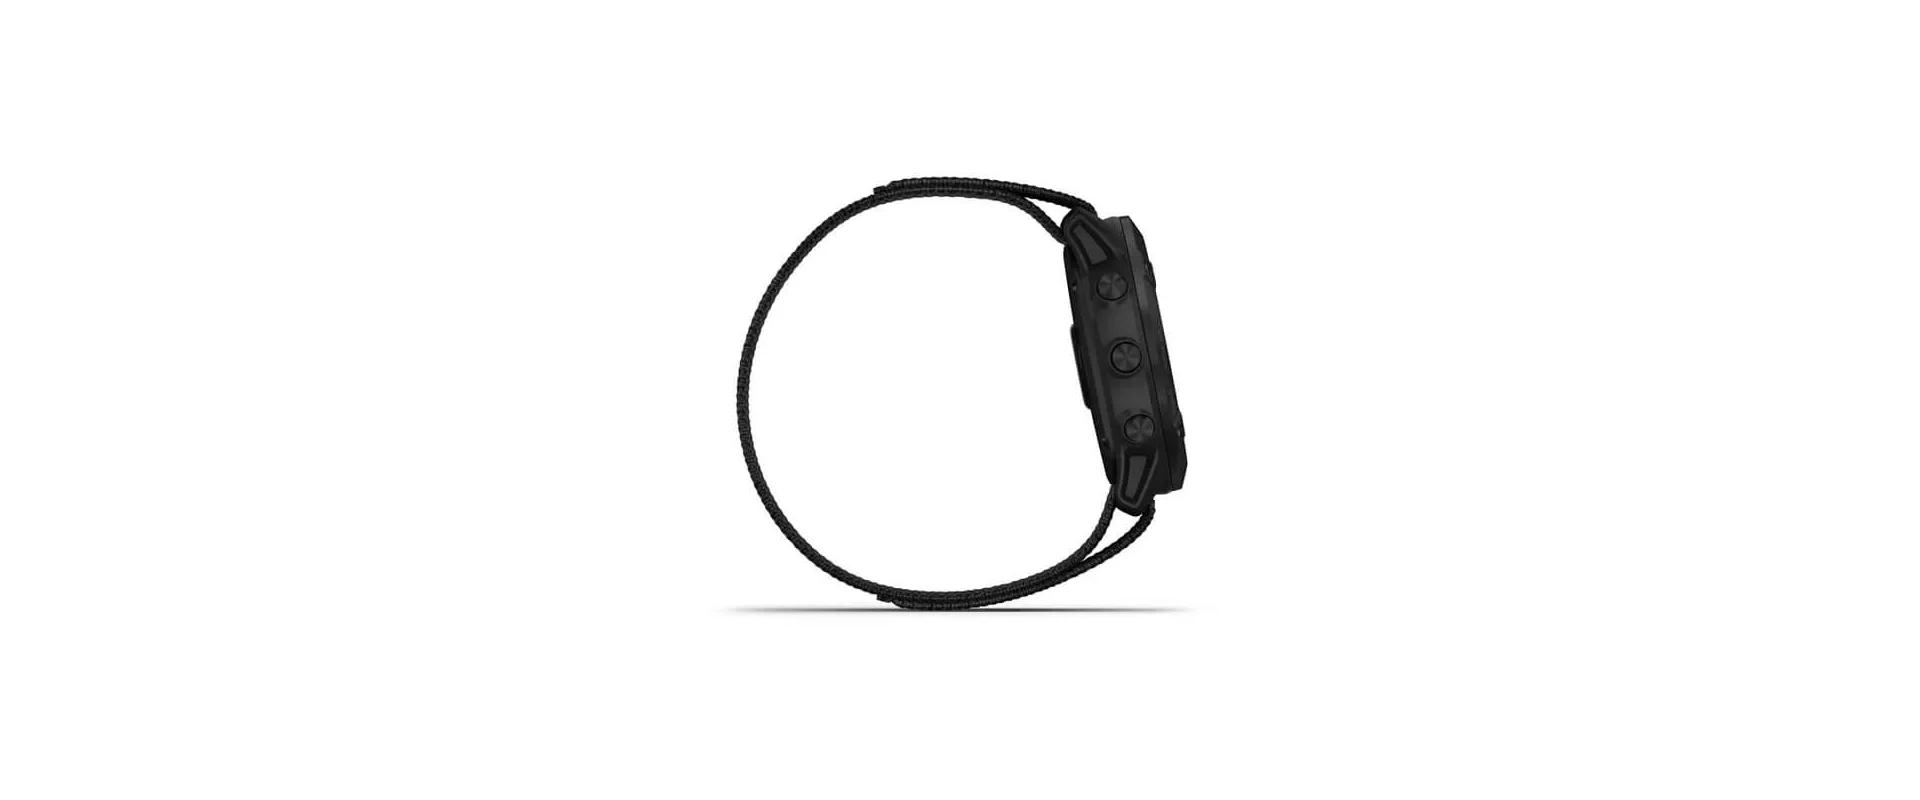 Garmin Enduro титановый корпус с угольно-серым DLC-покрытием и черный нейлоновый ремешок UltraFit фото 3